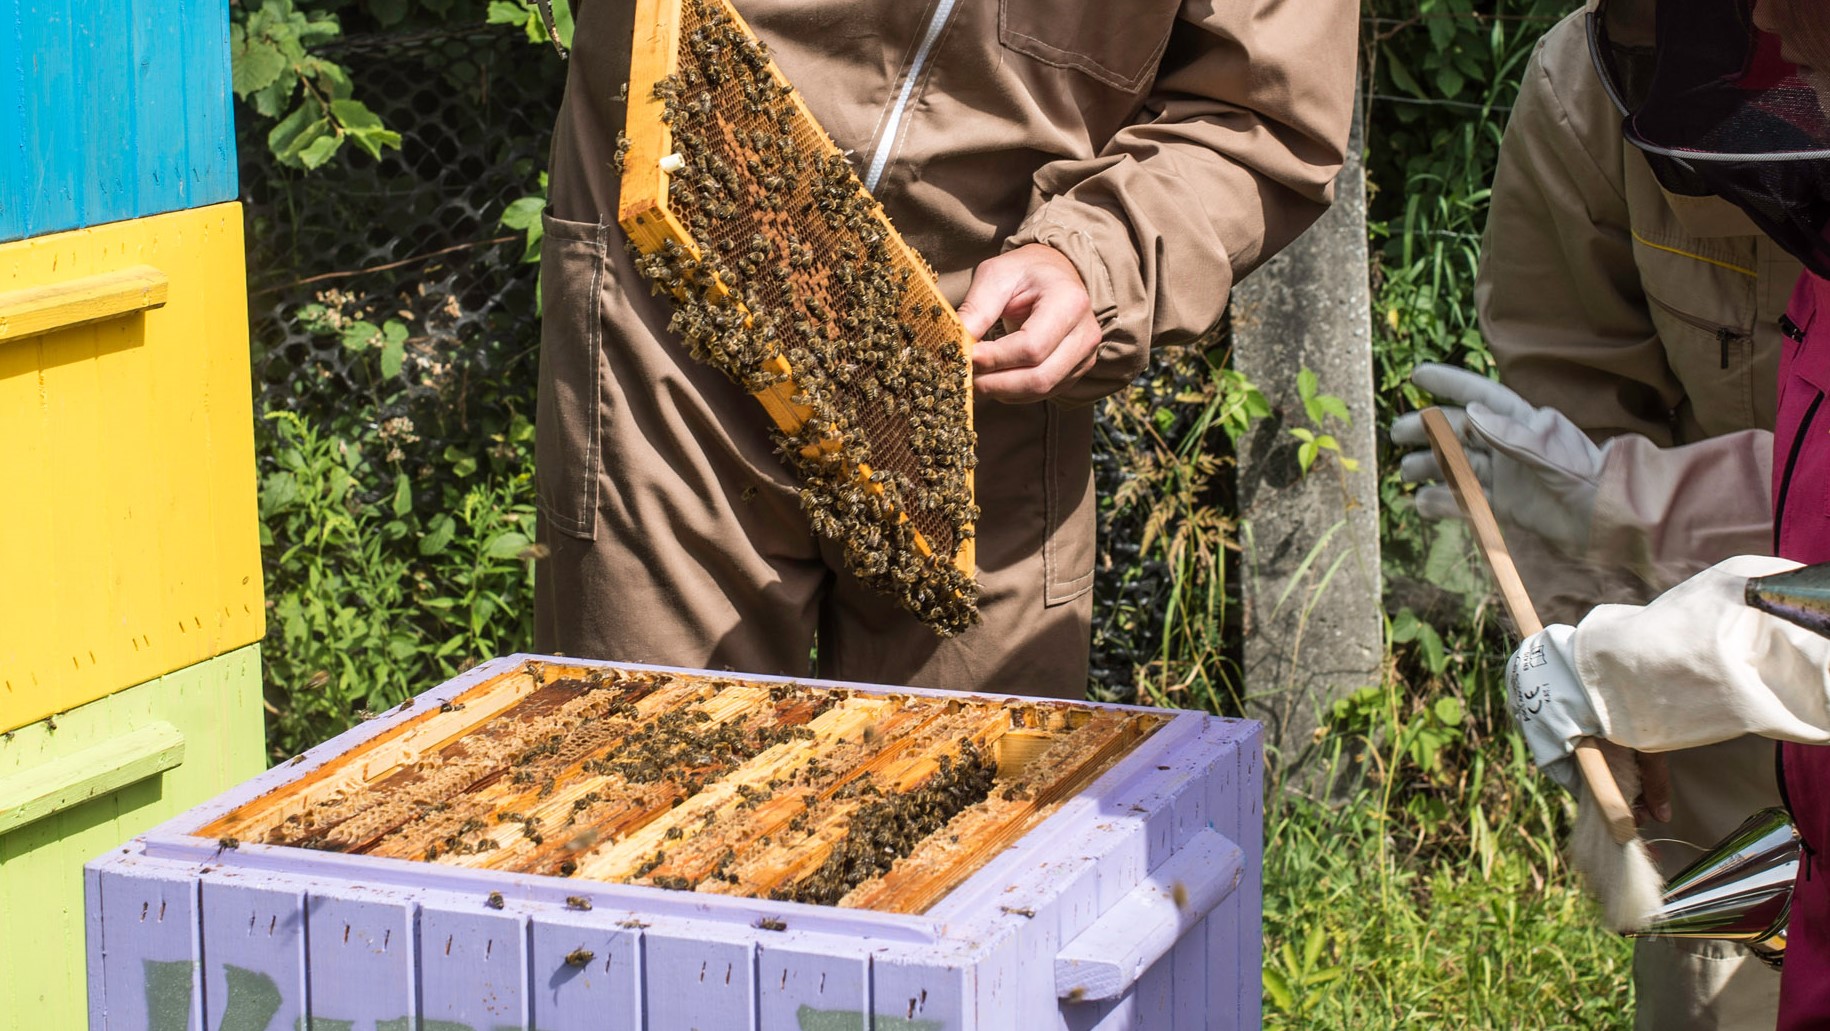 Pszczoła w centrum uwagi... - czyli staż uczniowski w zawodzie pszczelarz, w ramach projektu Dobry Start w Rzemiośle